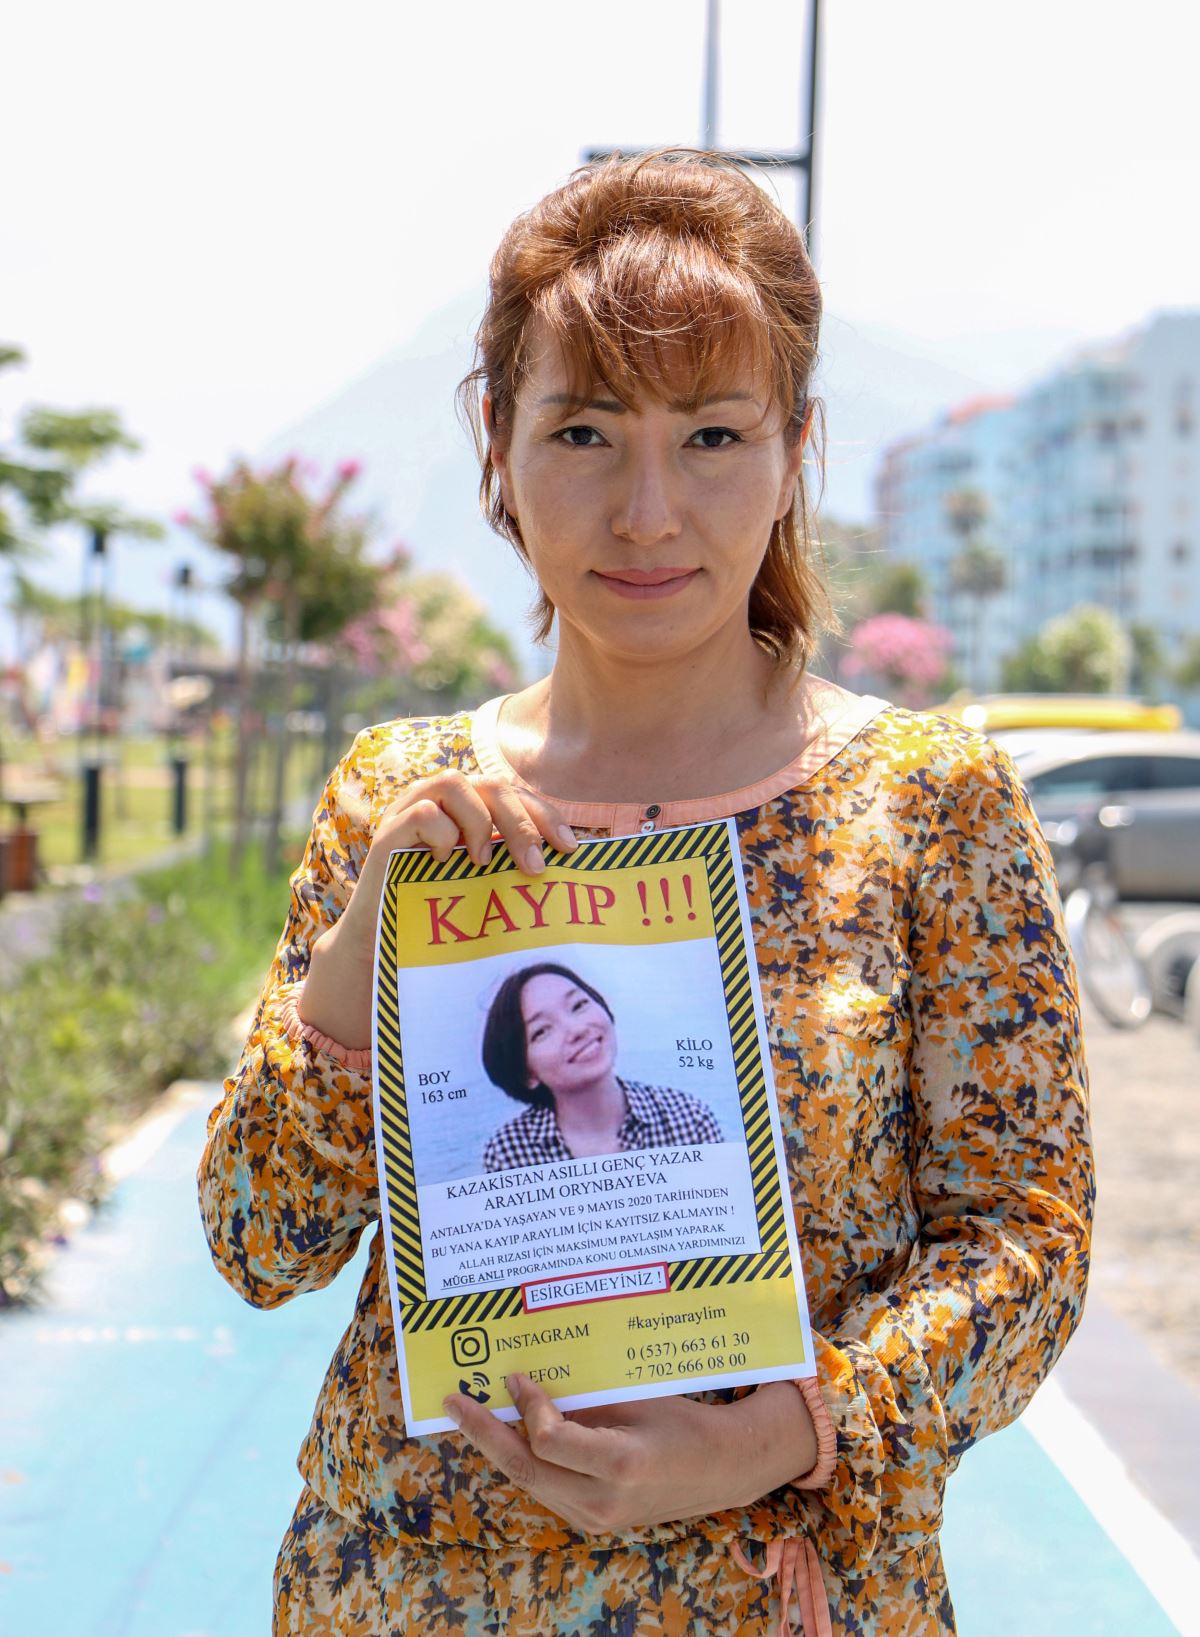 Antalya'da yaşayan 21 yaşındaki Araylım Orynbayeva'dan iki buçuk aydır haber alınamıyor